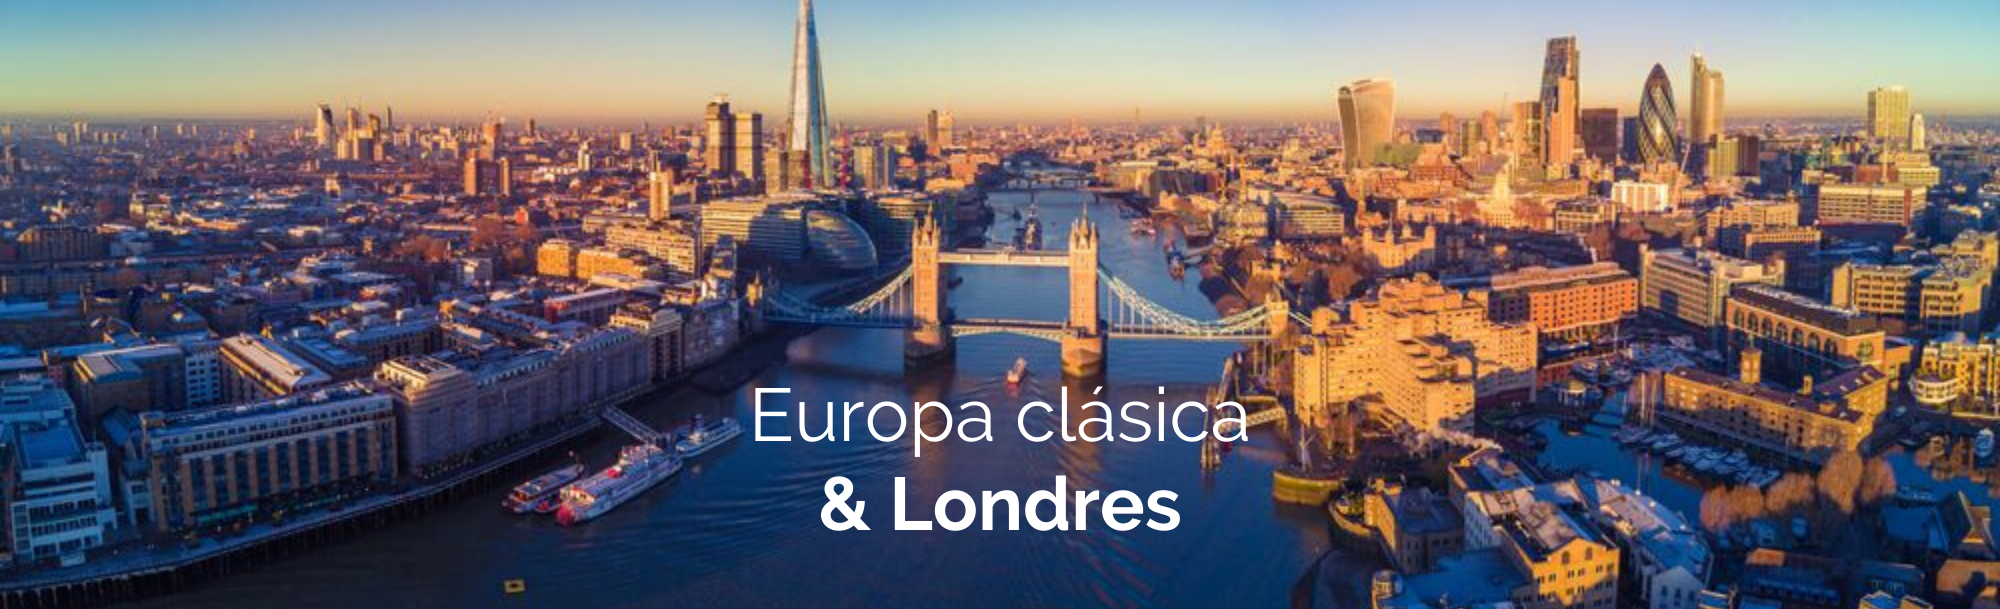 Europa clásica y Londres